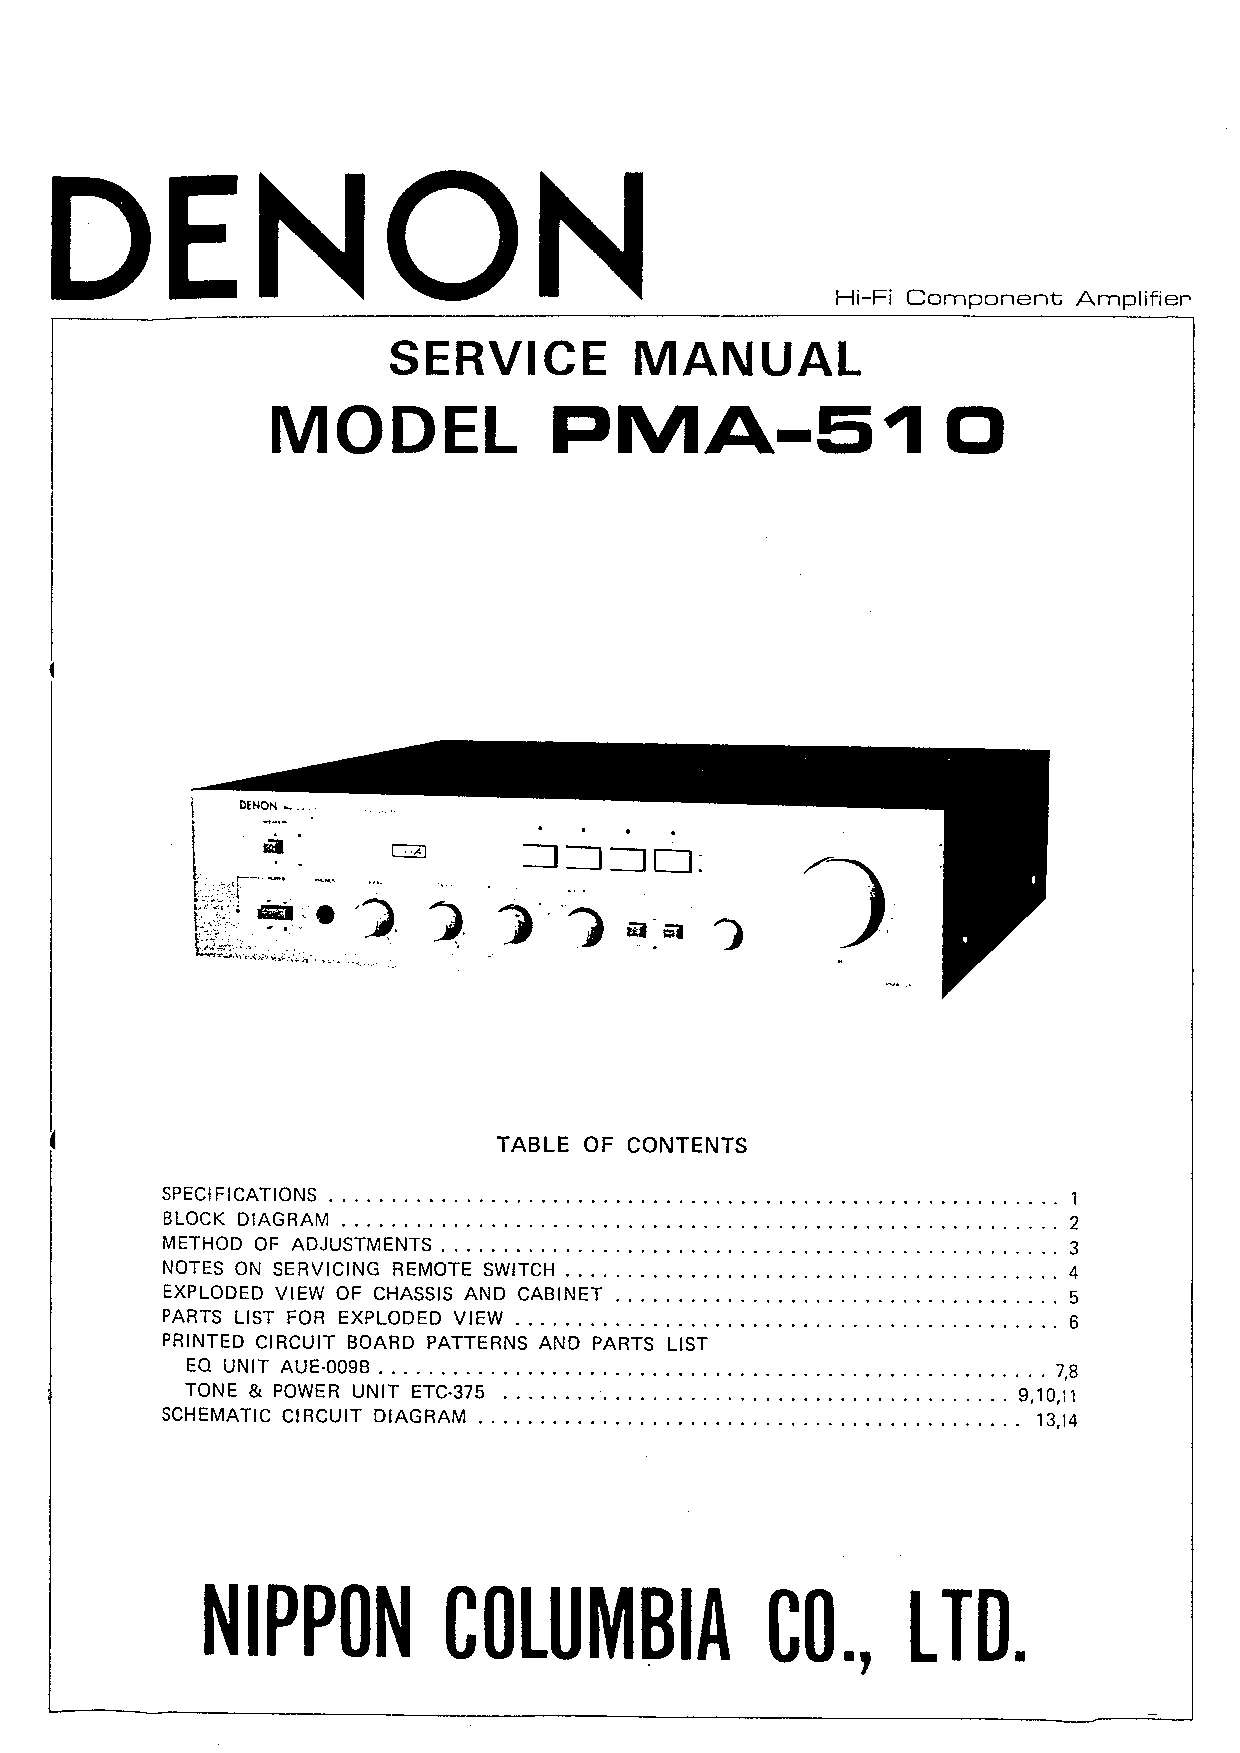 Denon PMA-510 Service Manual